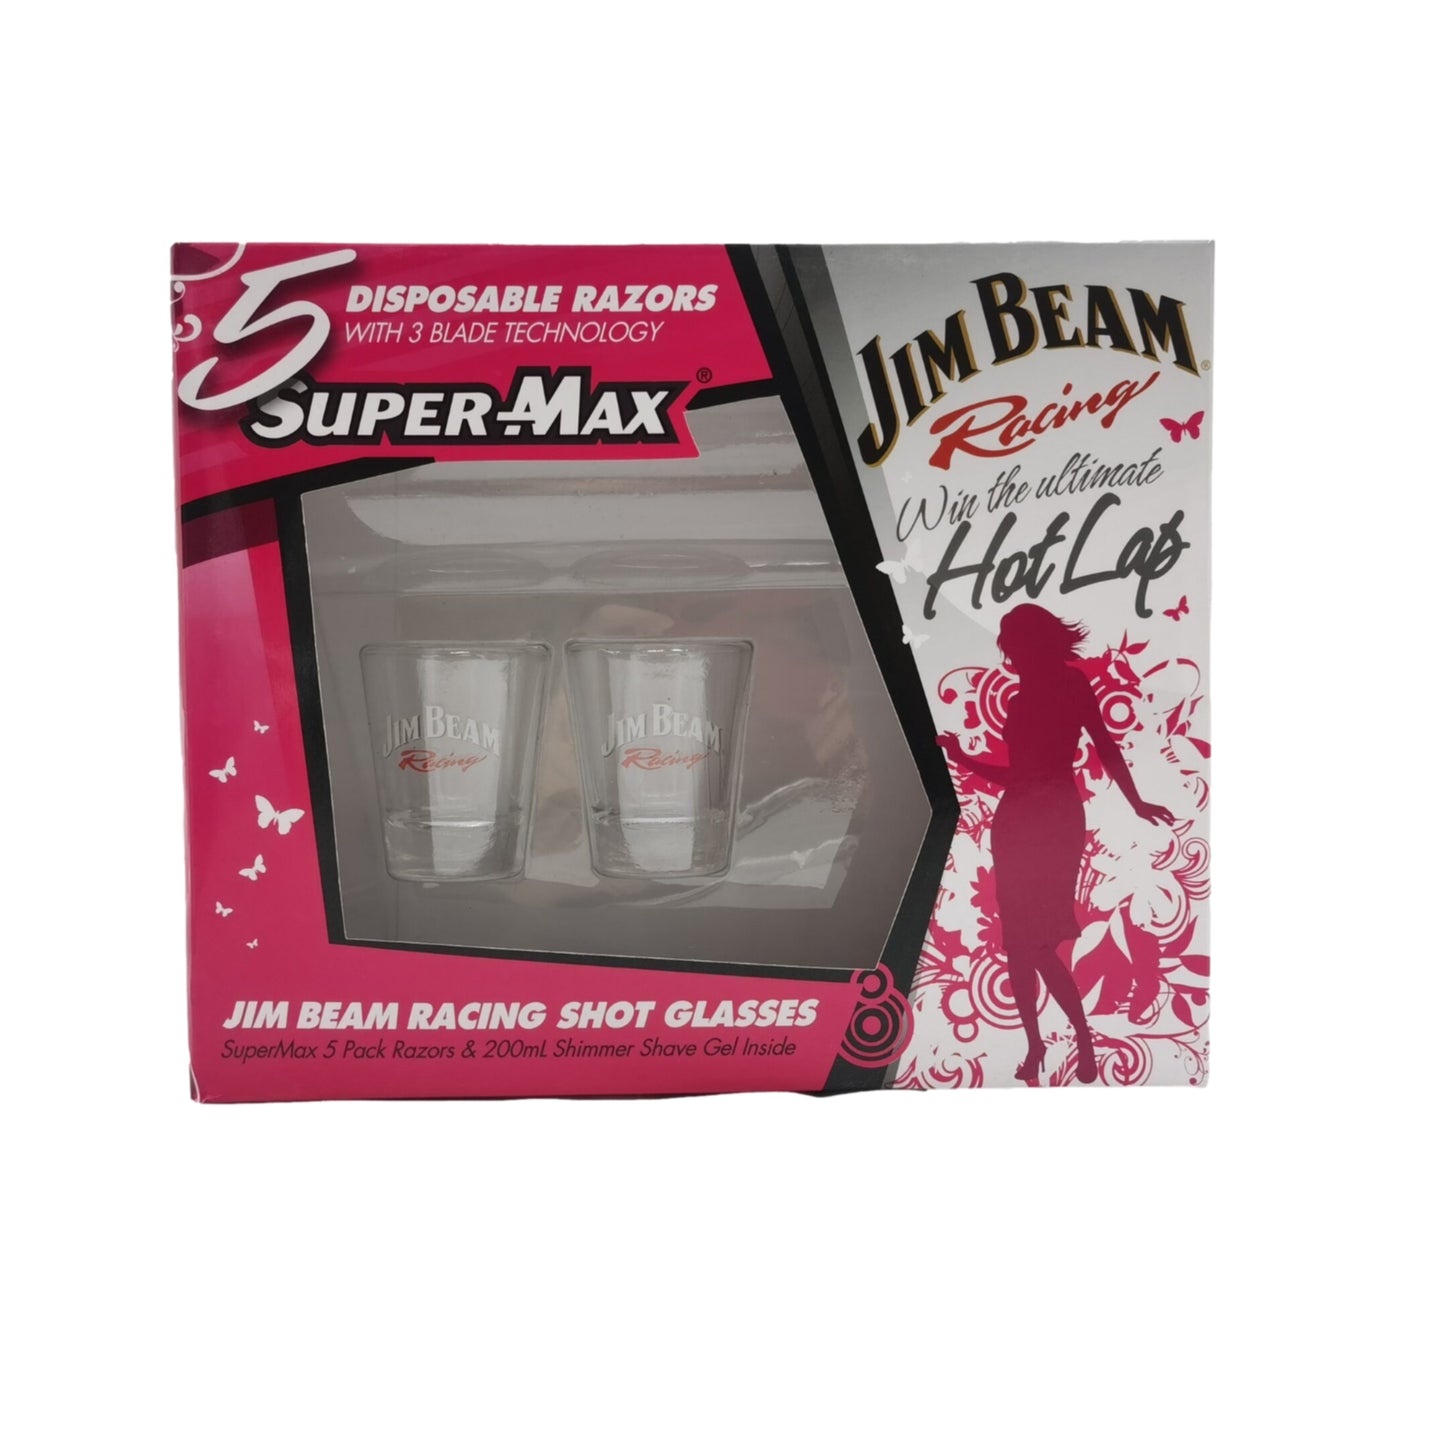 Jim Beam Racing Super Max Disposable Razors Shot Glasses - Homeware Discounts